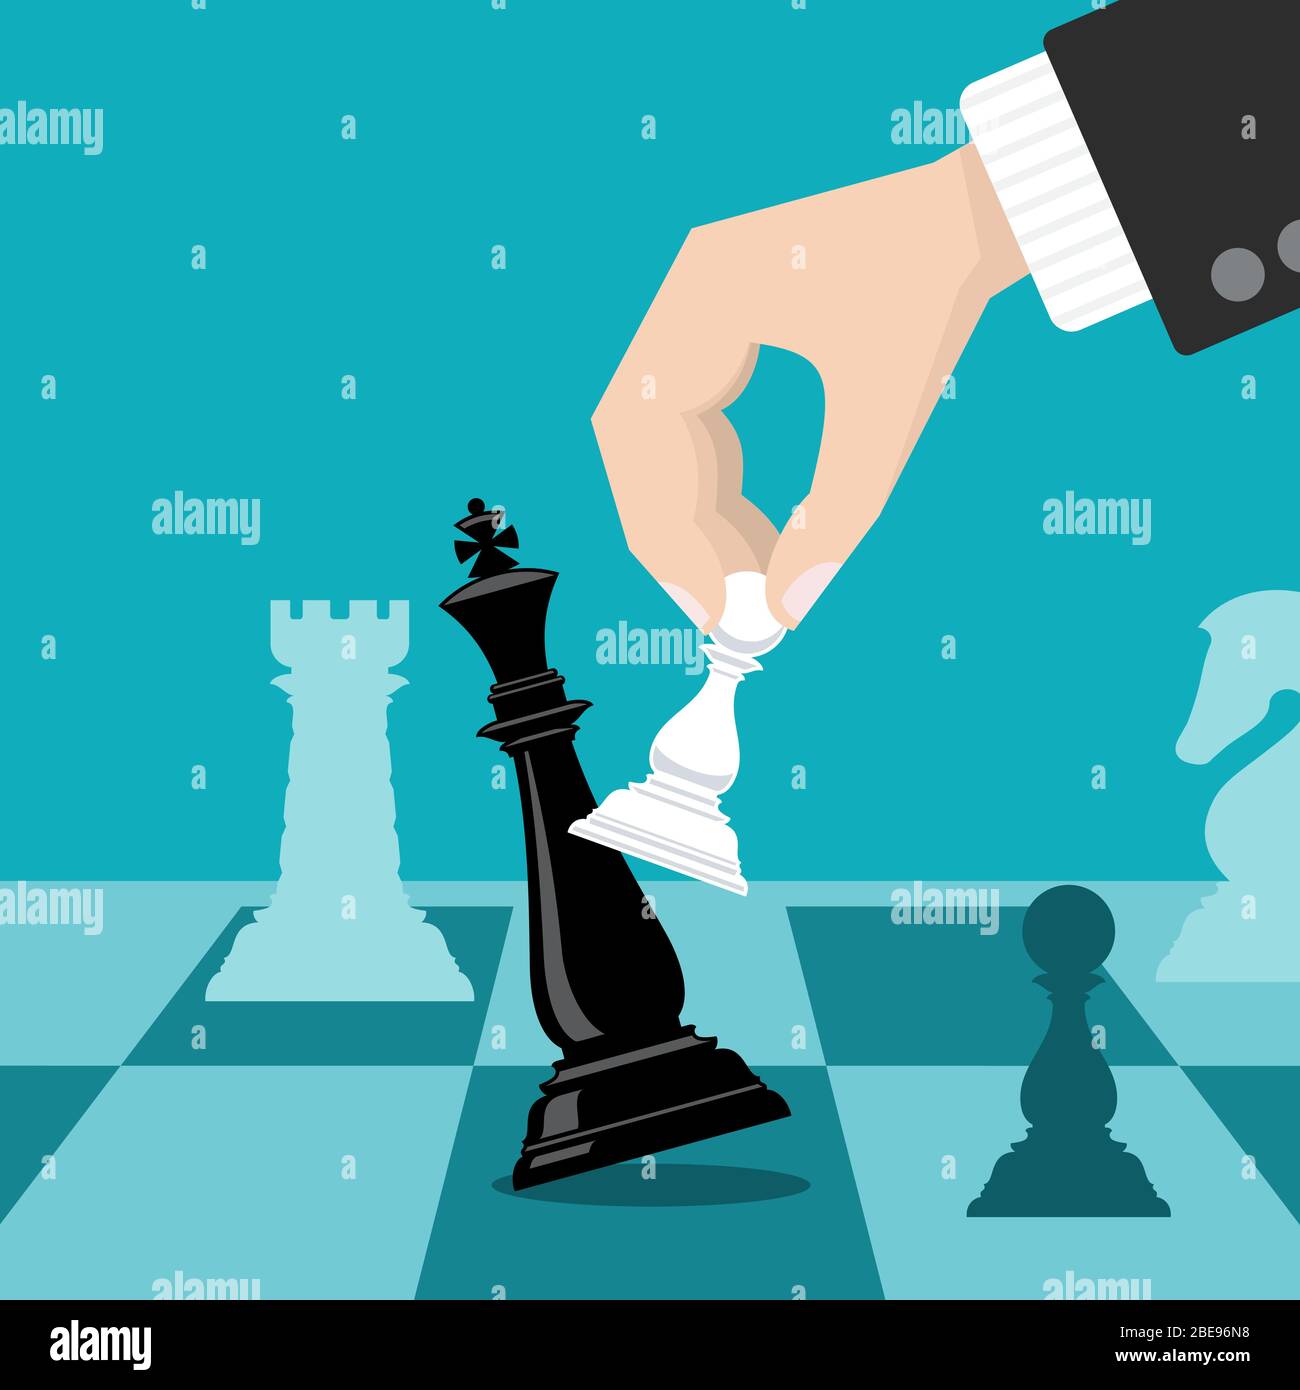 Business Schachmatt Strategie Vektor-Konzept mit Hand hält Schachspieler klopfen König. Abbildung der Metapher „Business Strategy Win“ Stock Vektor